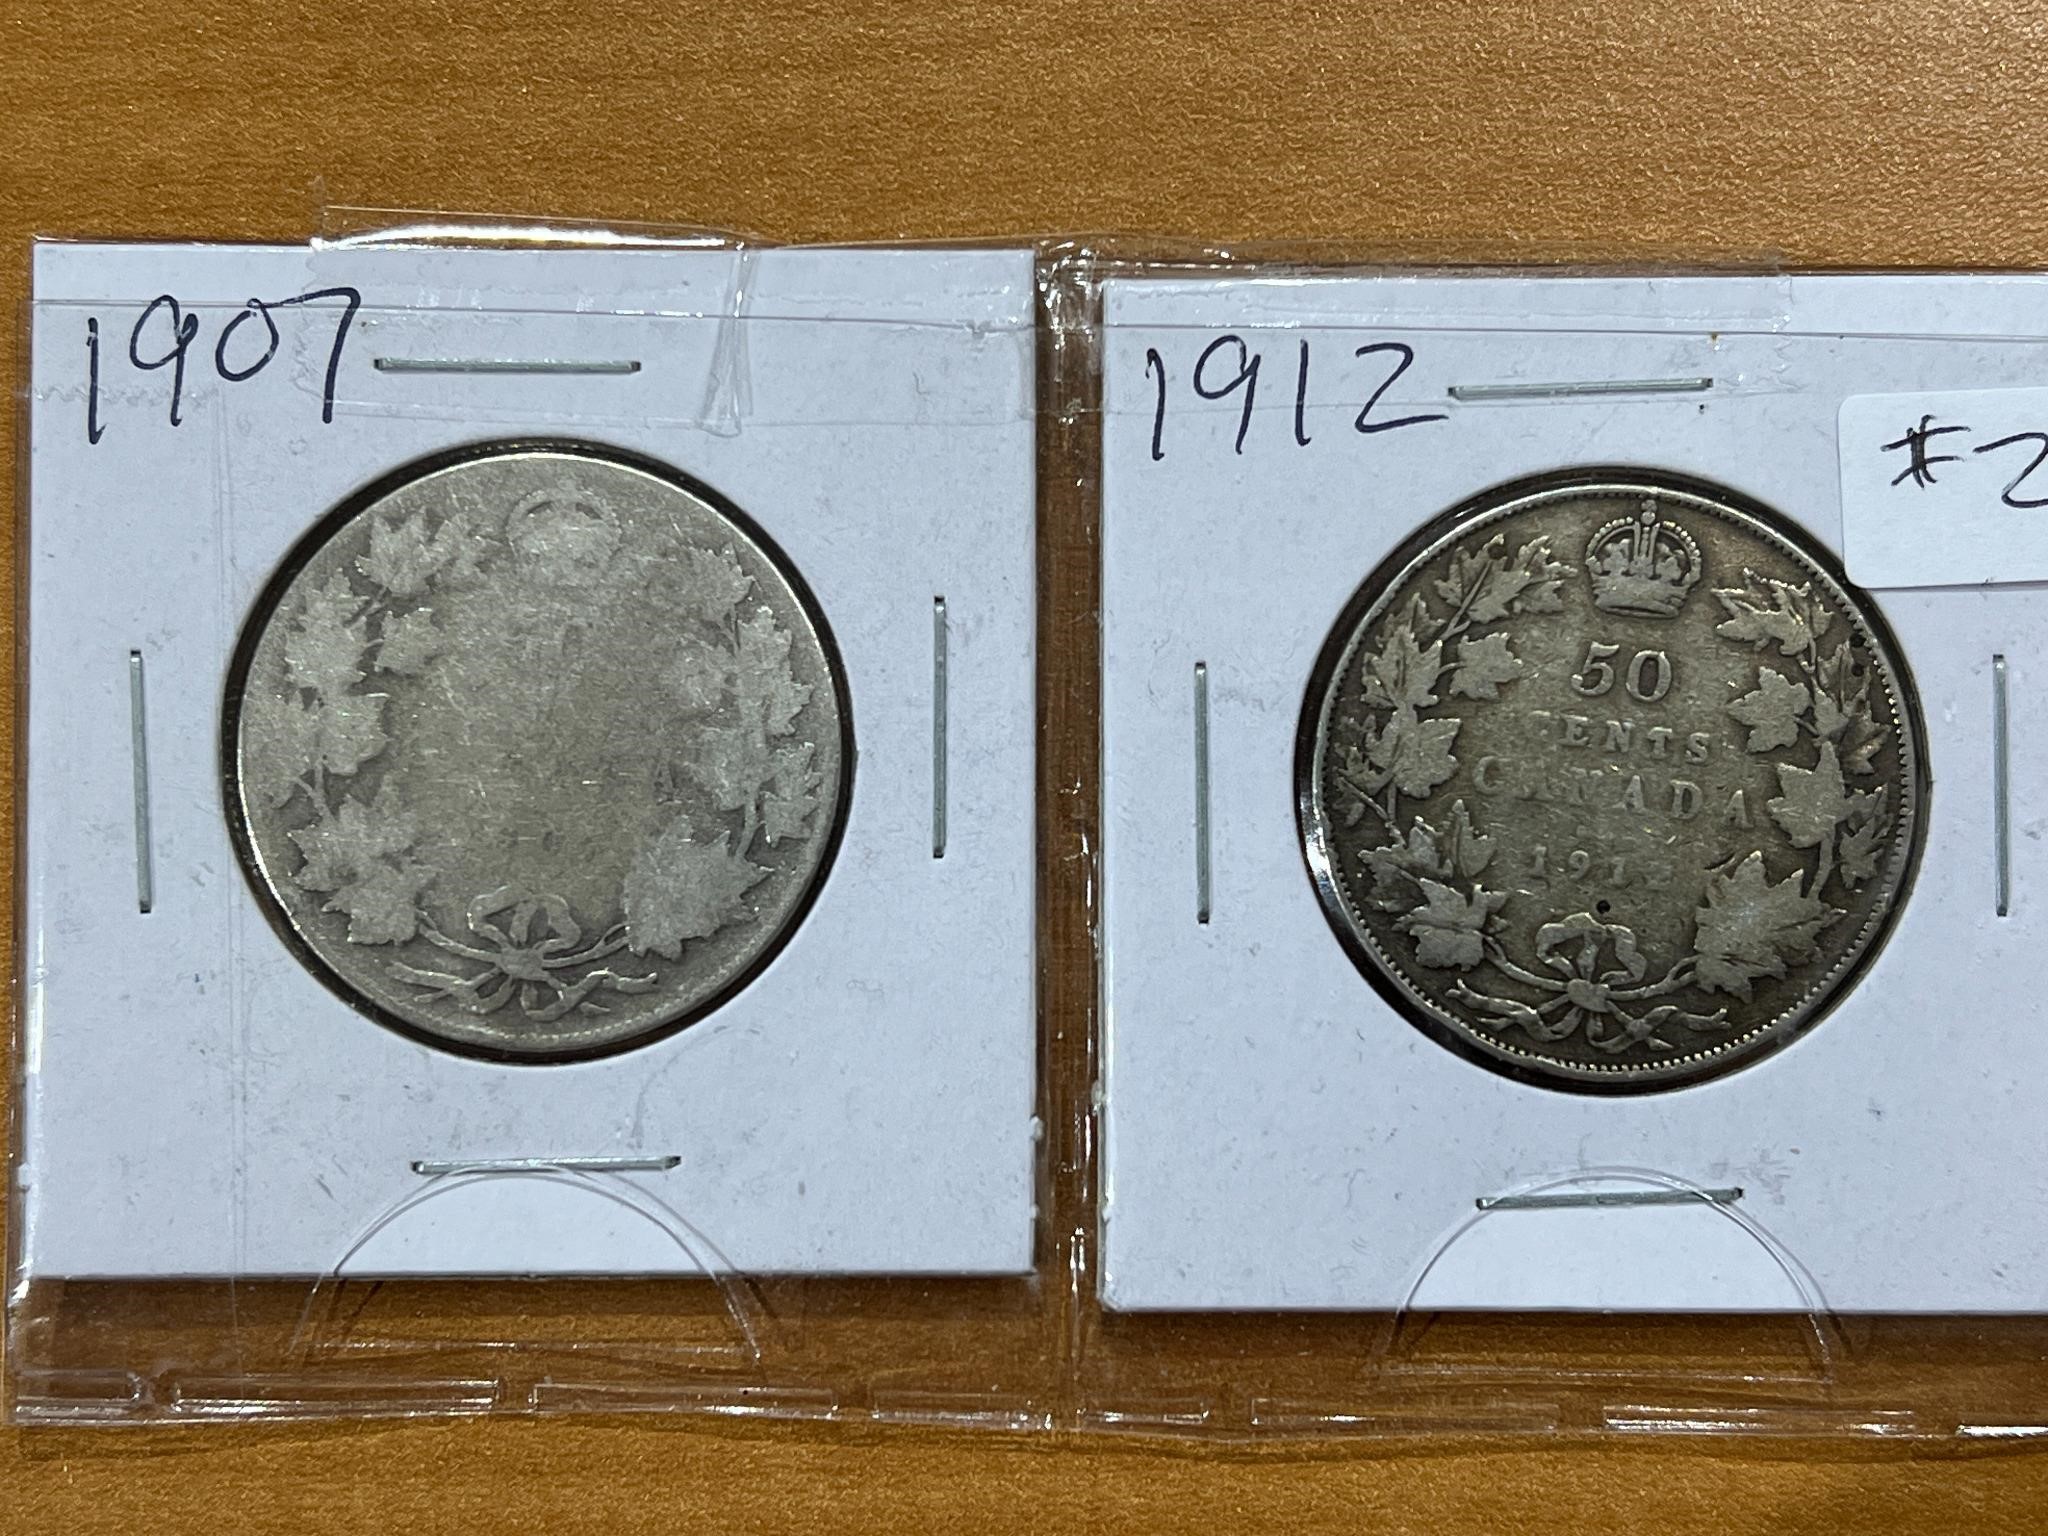 2- Cdn $.50 Coins - 1907 and 1912